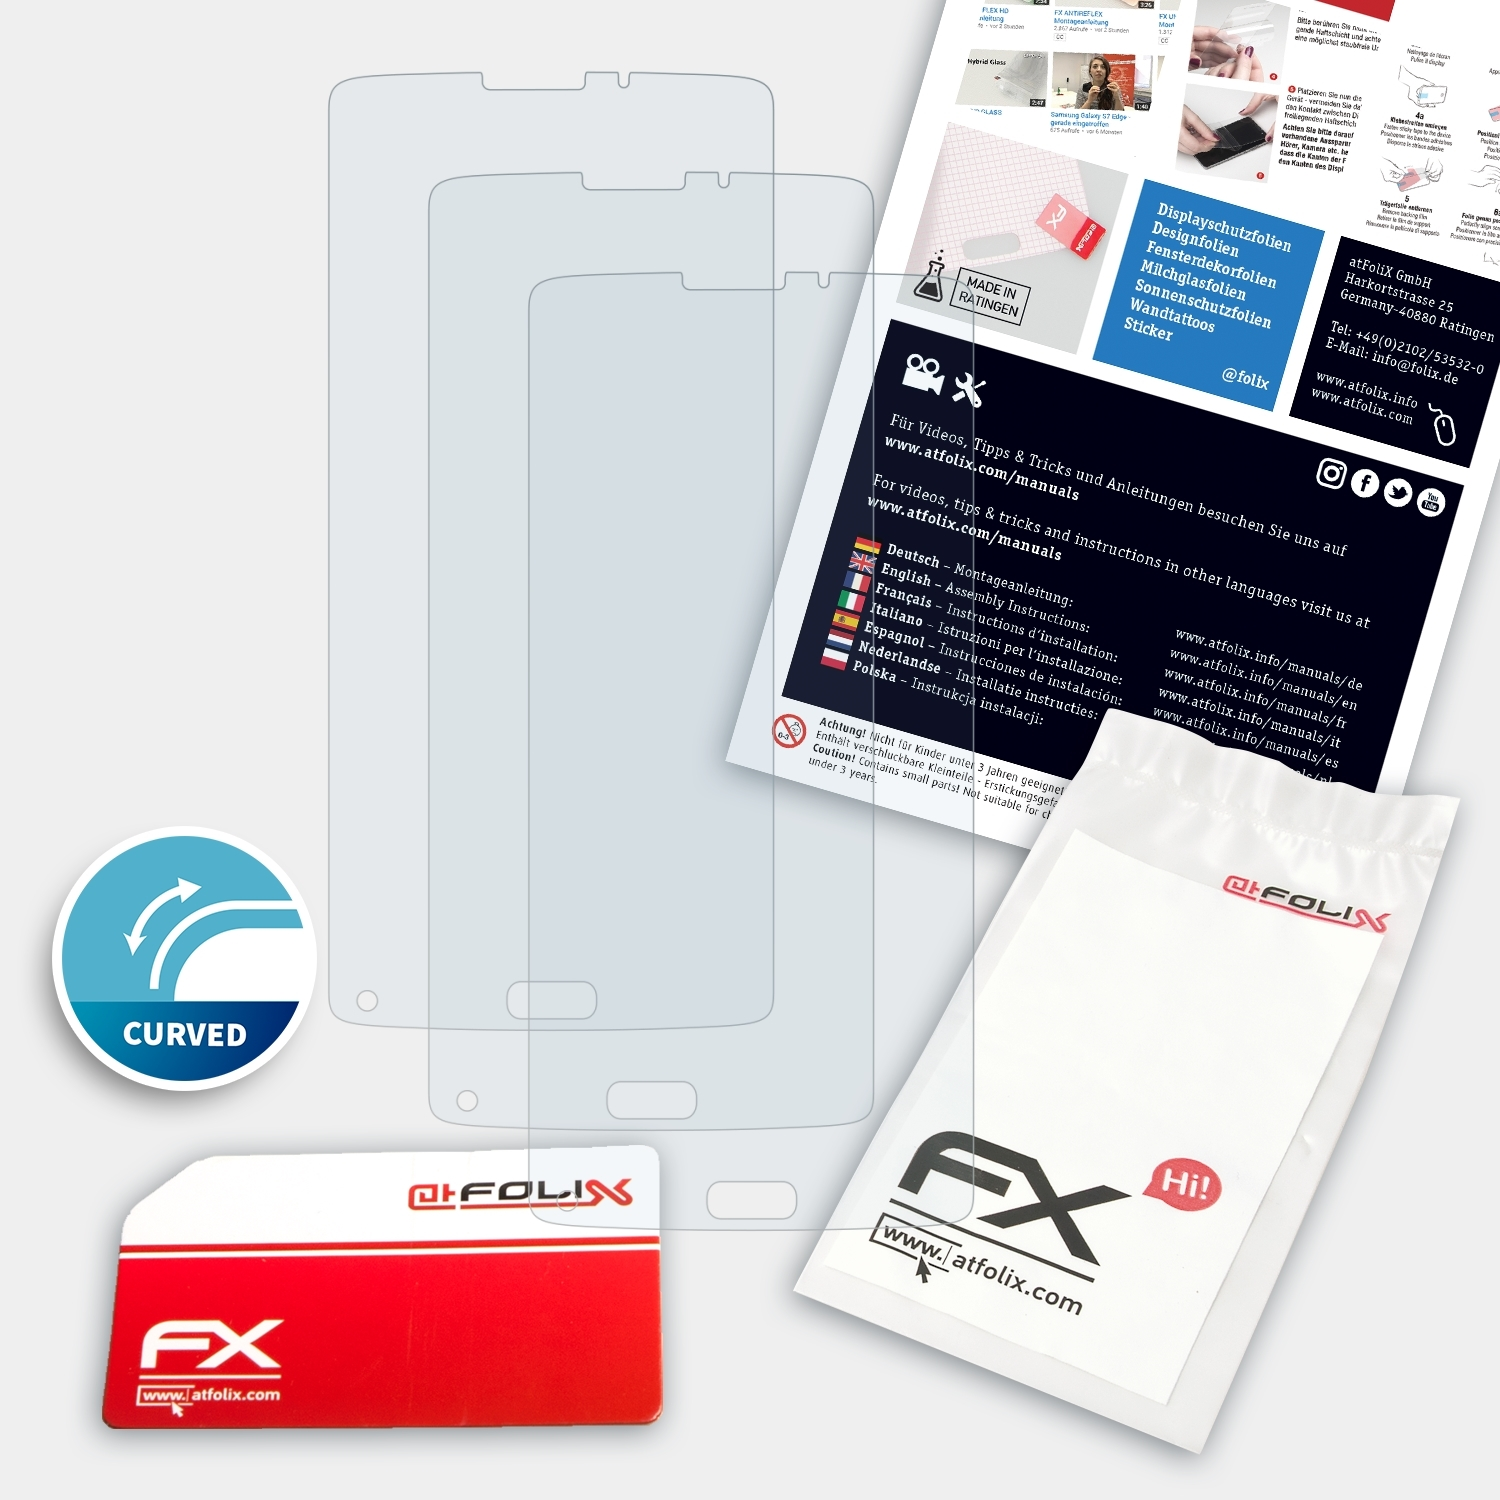 S9 Homtom 3x ATFOLIX Plus) Displayschutz(für FX-ActiFleX